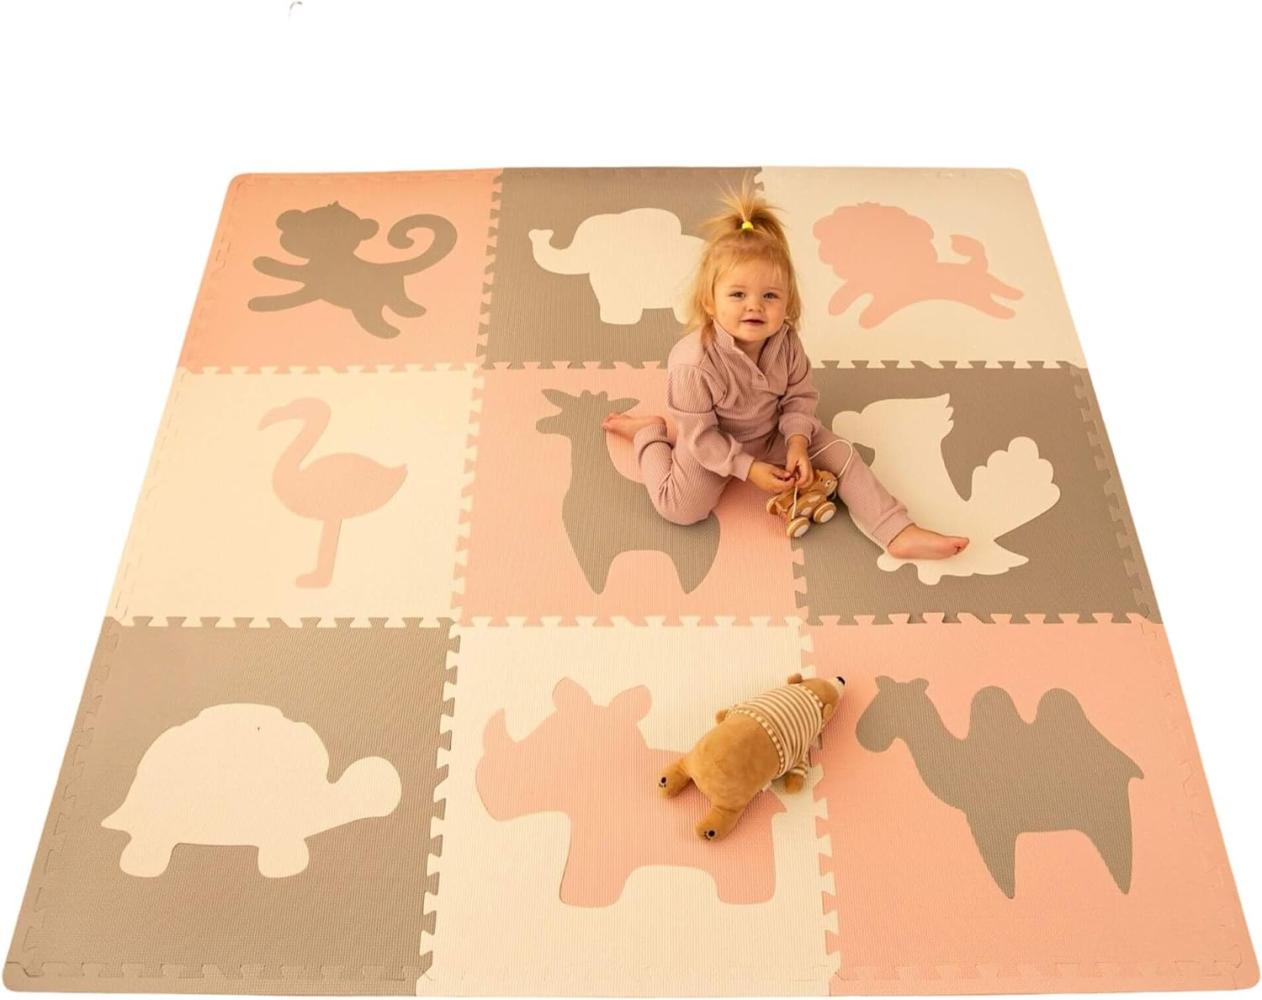 Hakuna Matte große Puzzlematte für Babys 1,8x1,8m – 9 XXL Platten 60 x 60cm mit Tieren – 20% dickere Spielmatte in Einer umweltfreundlichen Verpackung – schadstofffreie, geruchlose Krabbelmatte Bild 1